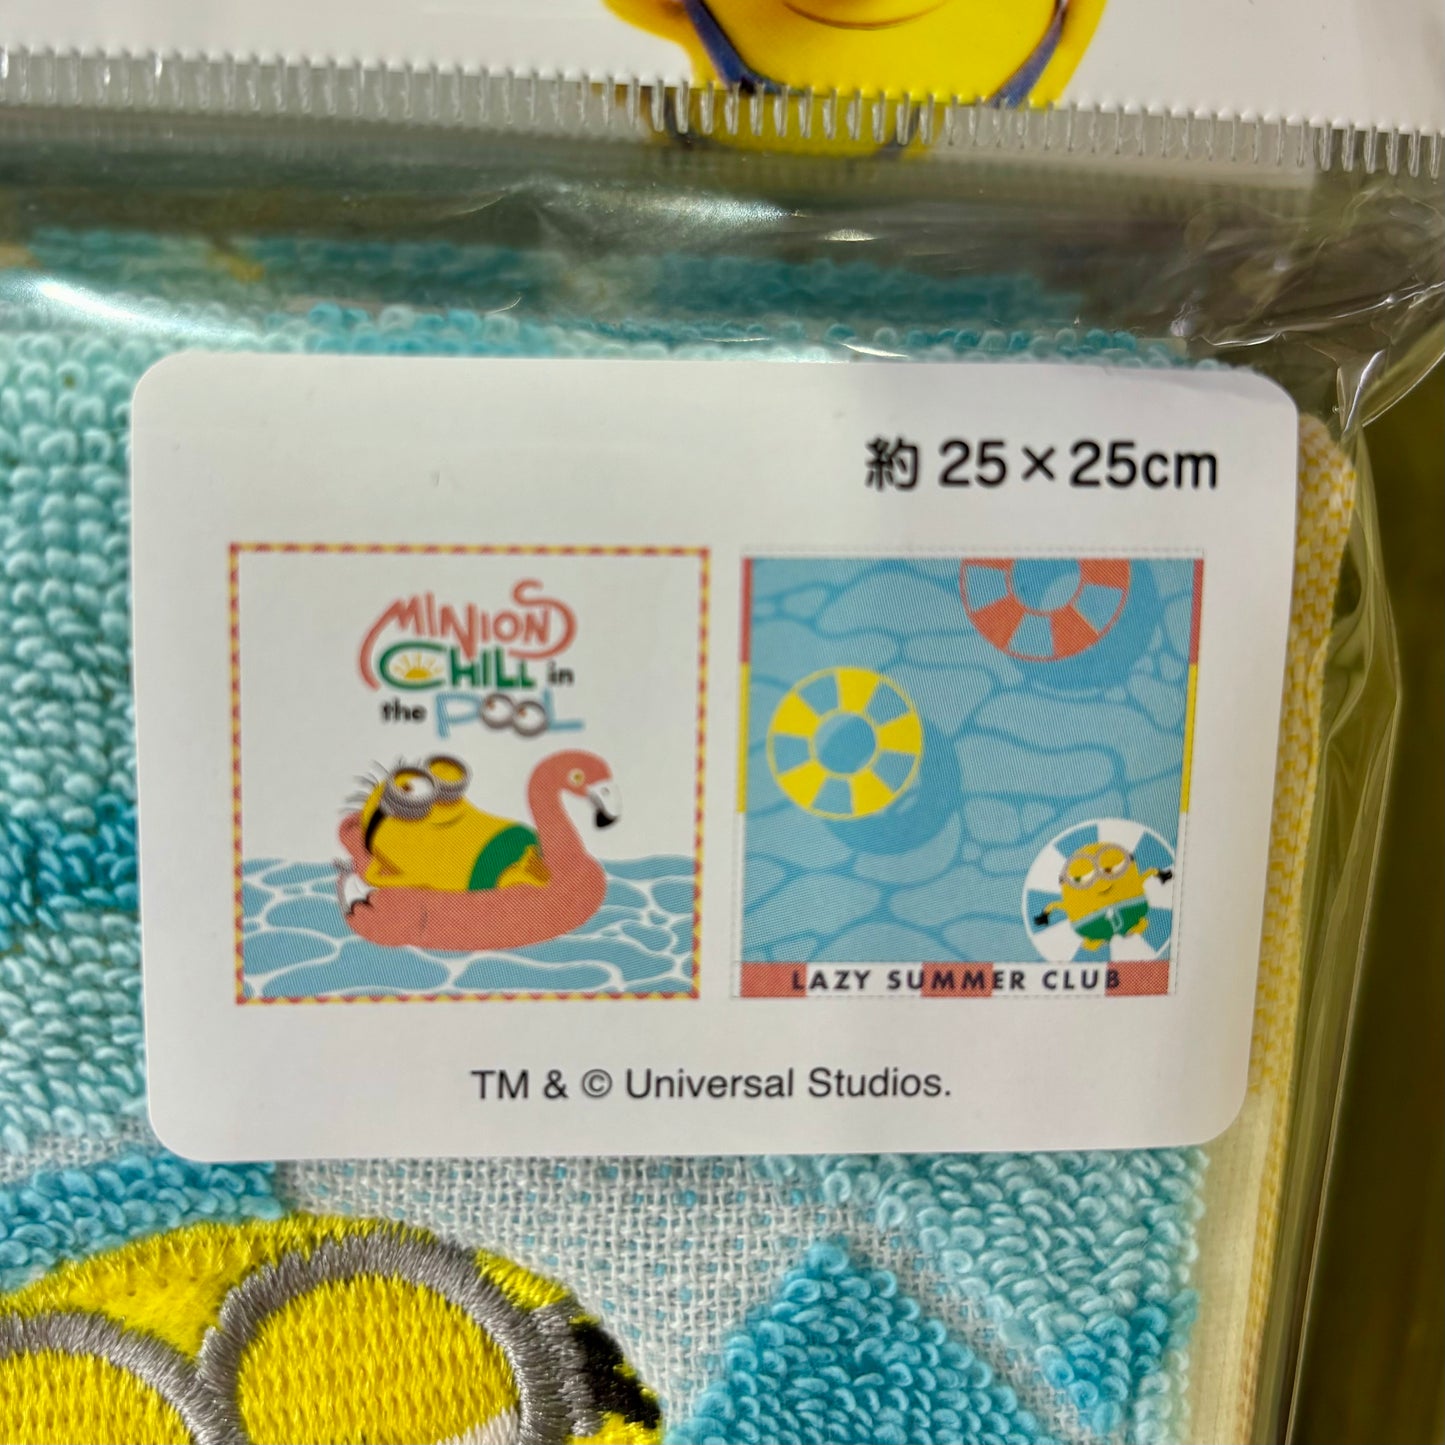 【訂貨】USJ Minions Chill in the Pool 毛巾